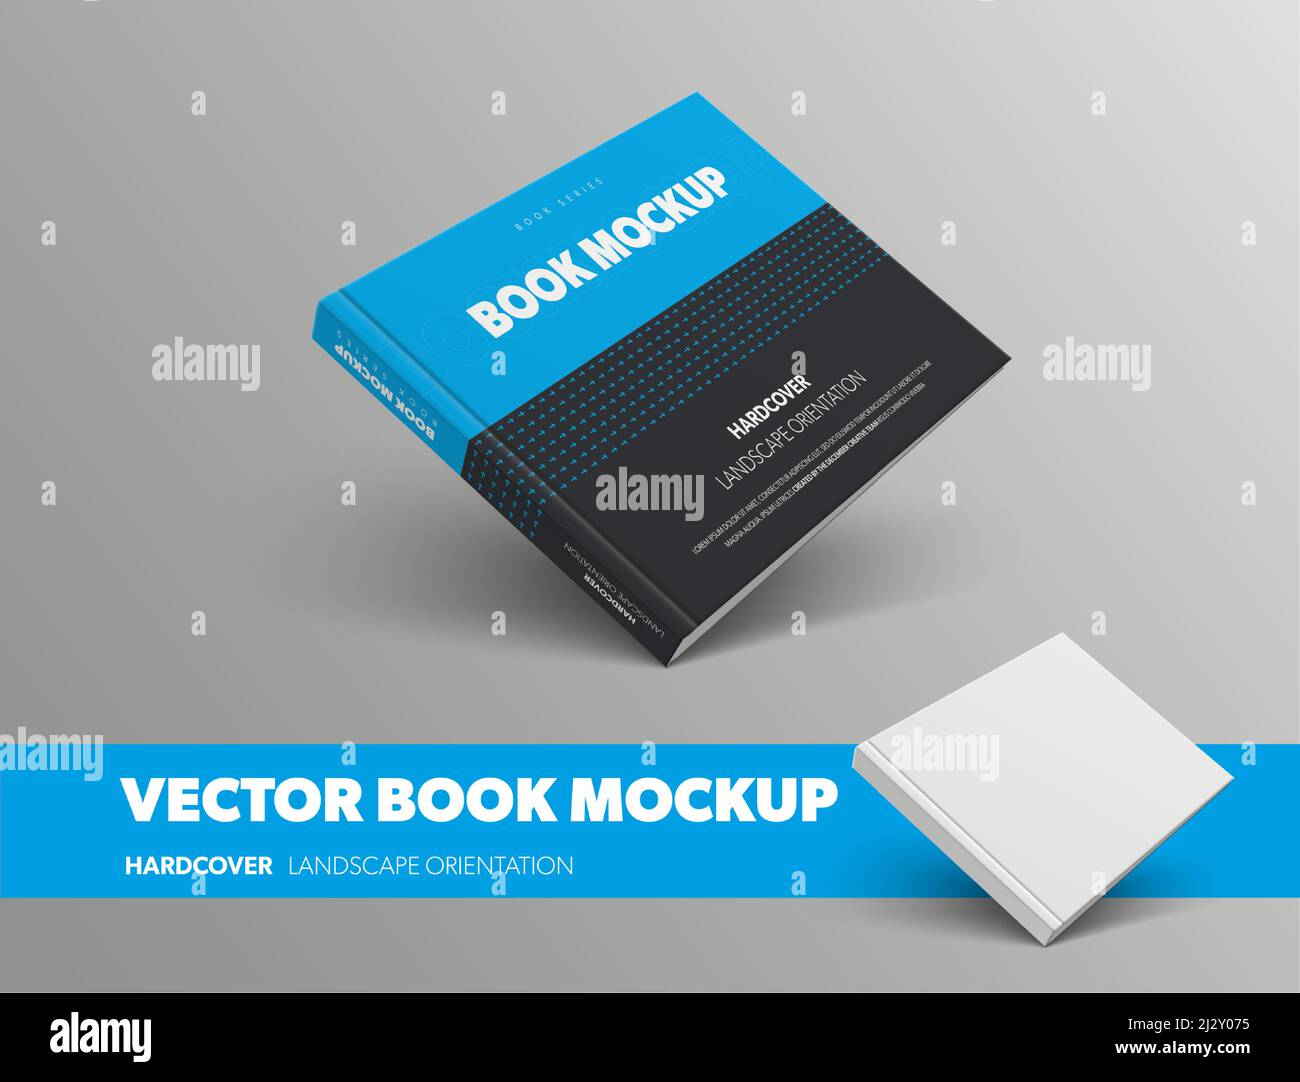 Modell eines geschlossenen Vektorbuches, mit abstraktem Muster in blauer und schwarzer Farbe, Hardcover-Landschaftsausrichtung, isoliert auf grauem Hintergrund. Standard-si Stock Vektor